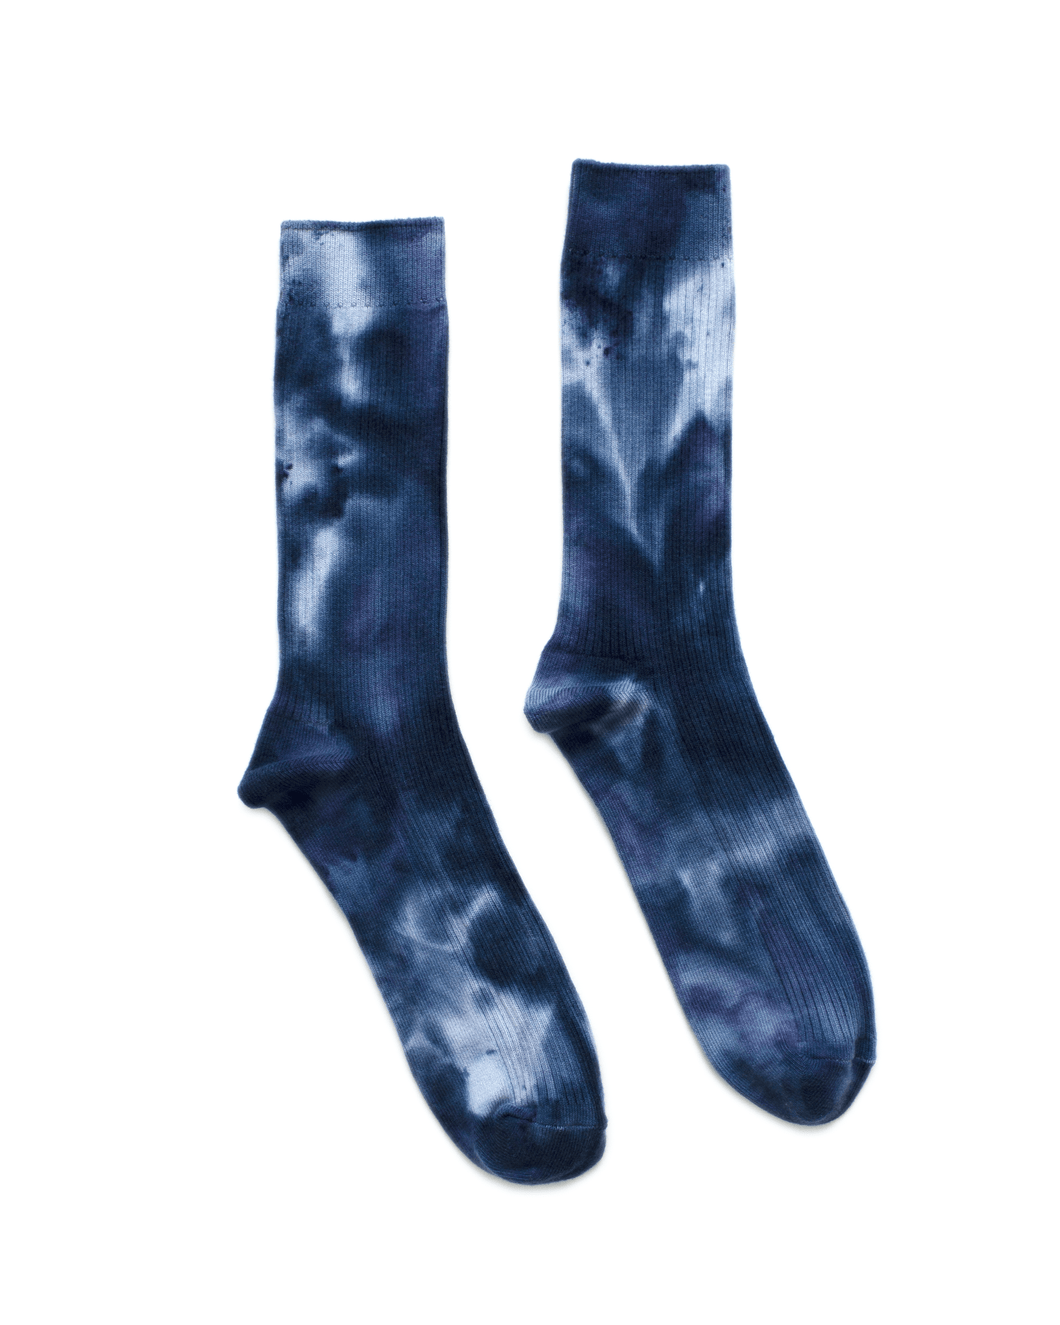 Dust Dye Socks - Blueberry Season